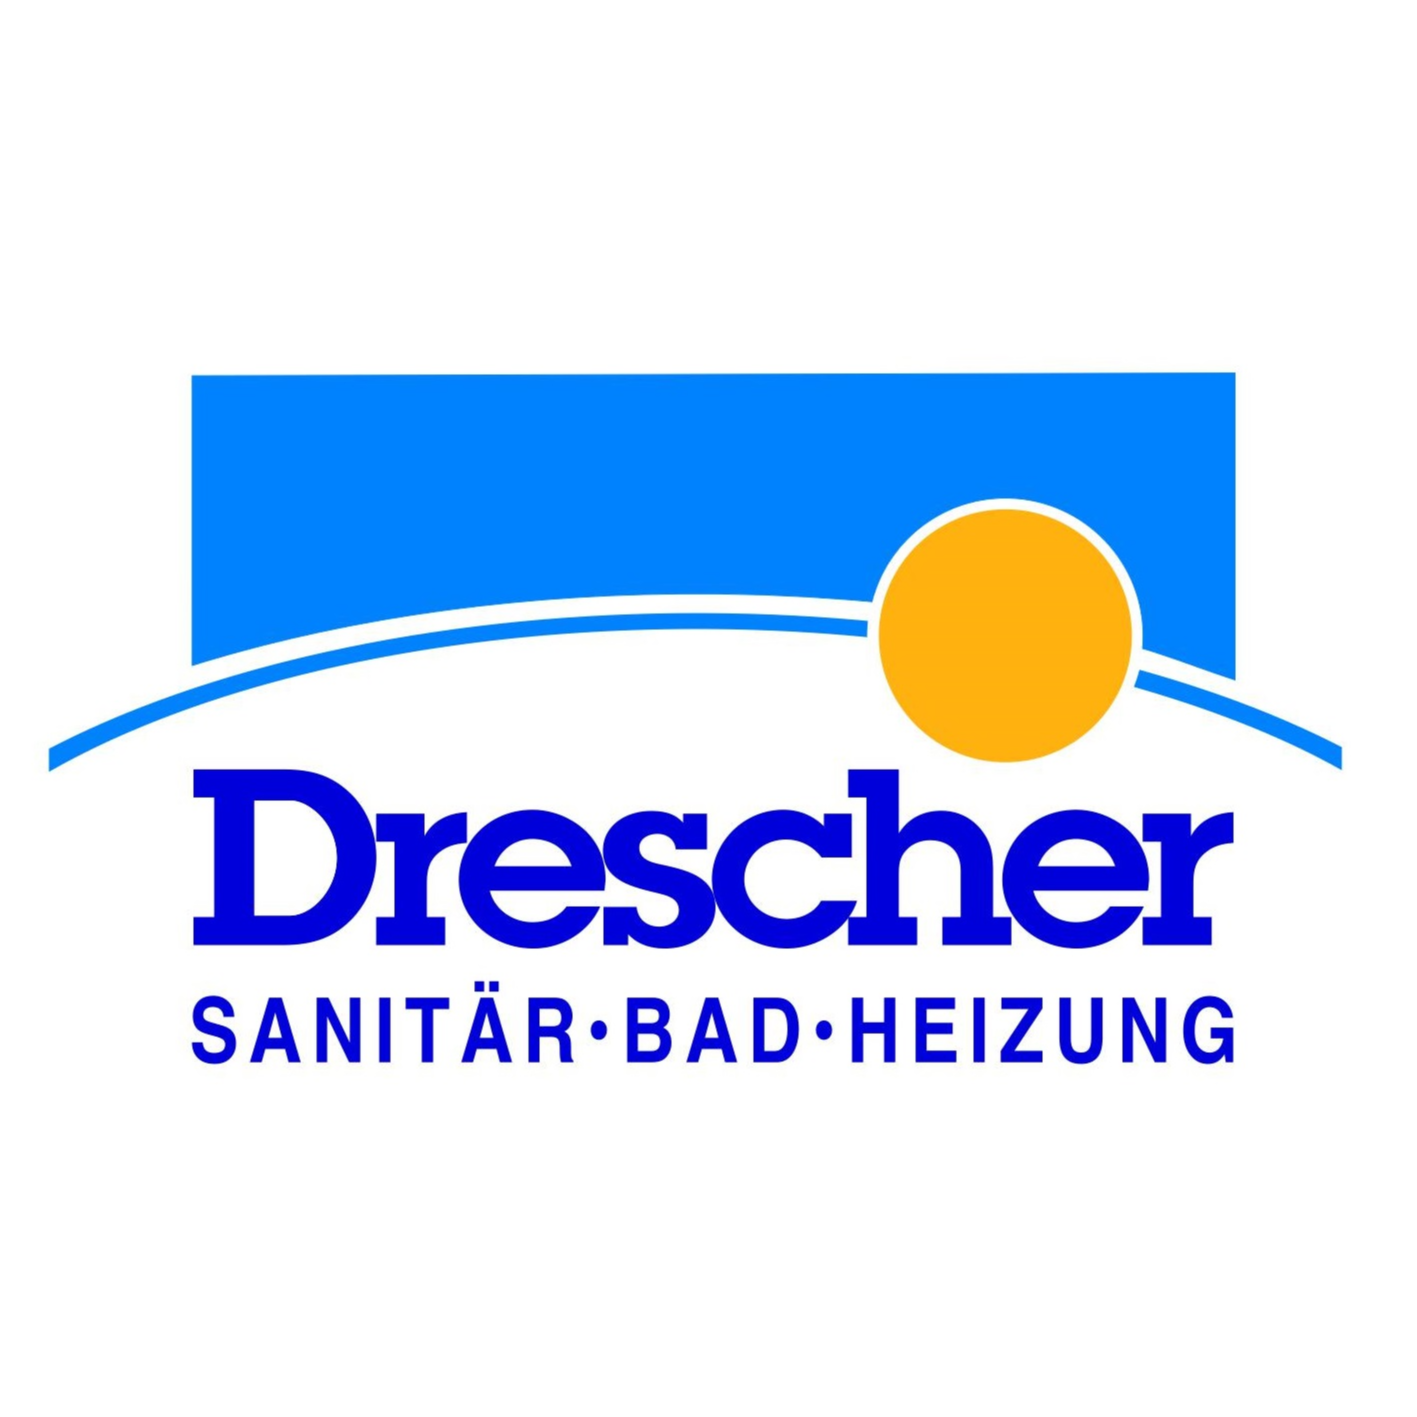 Drescher GmbH Heizung - Sanitär - Bad  